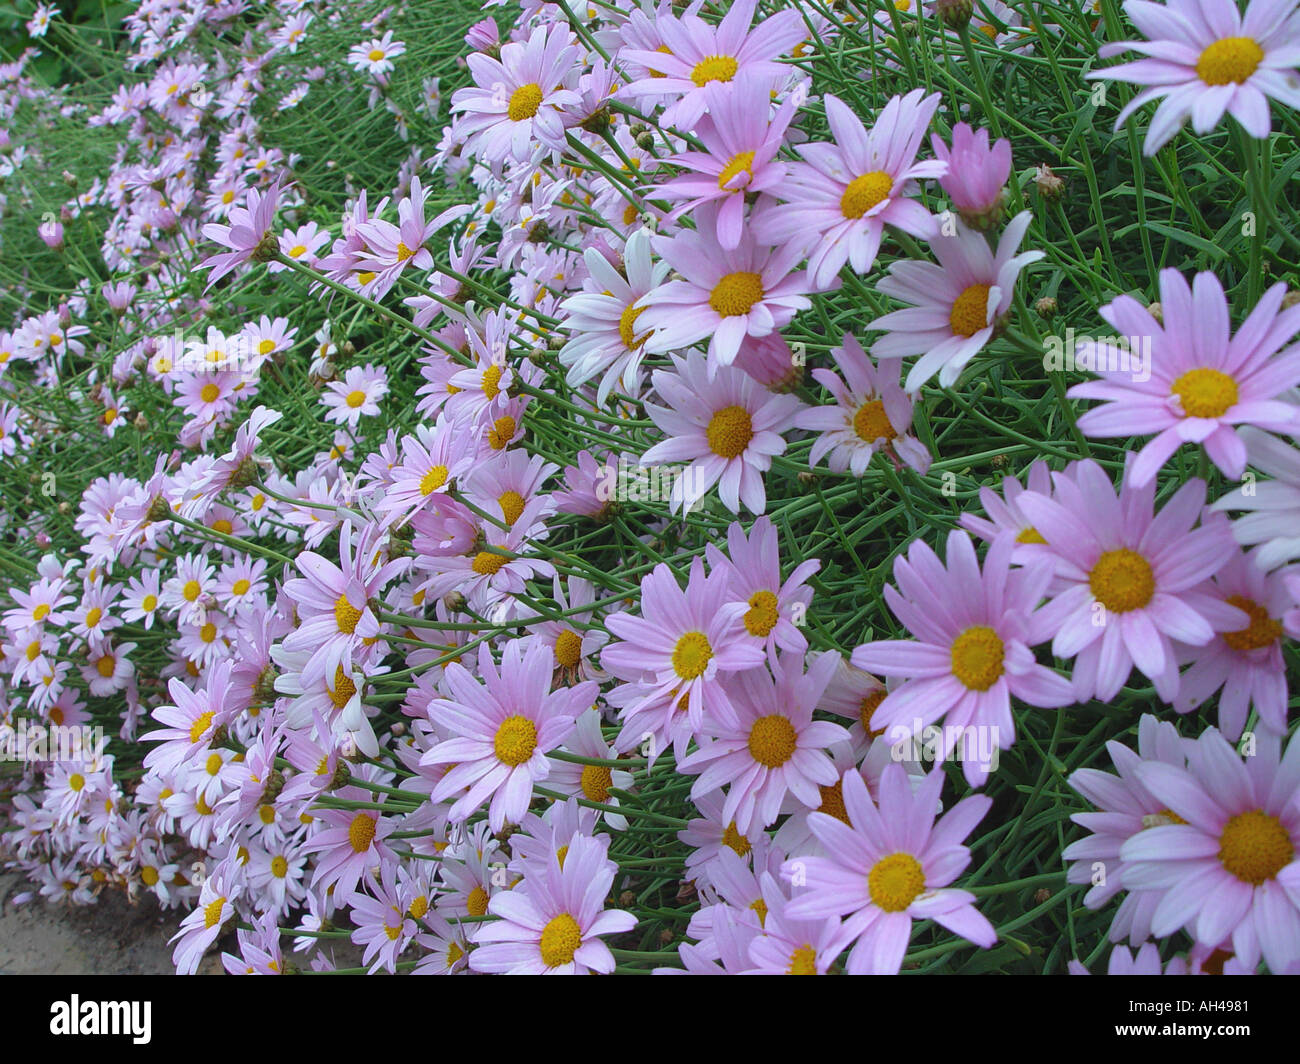 Argyranthemum Petite Pink Flowering perennial in garden setting Stock Photo